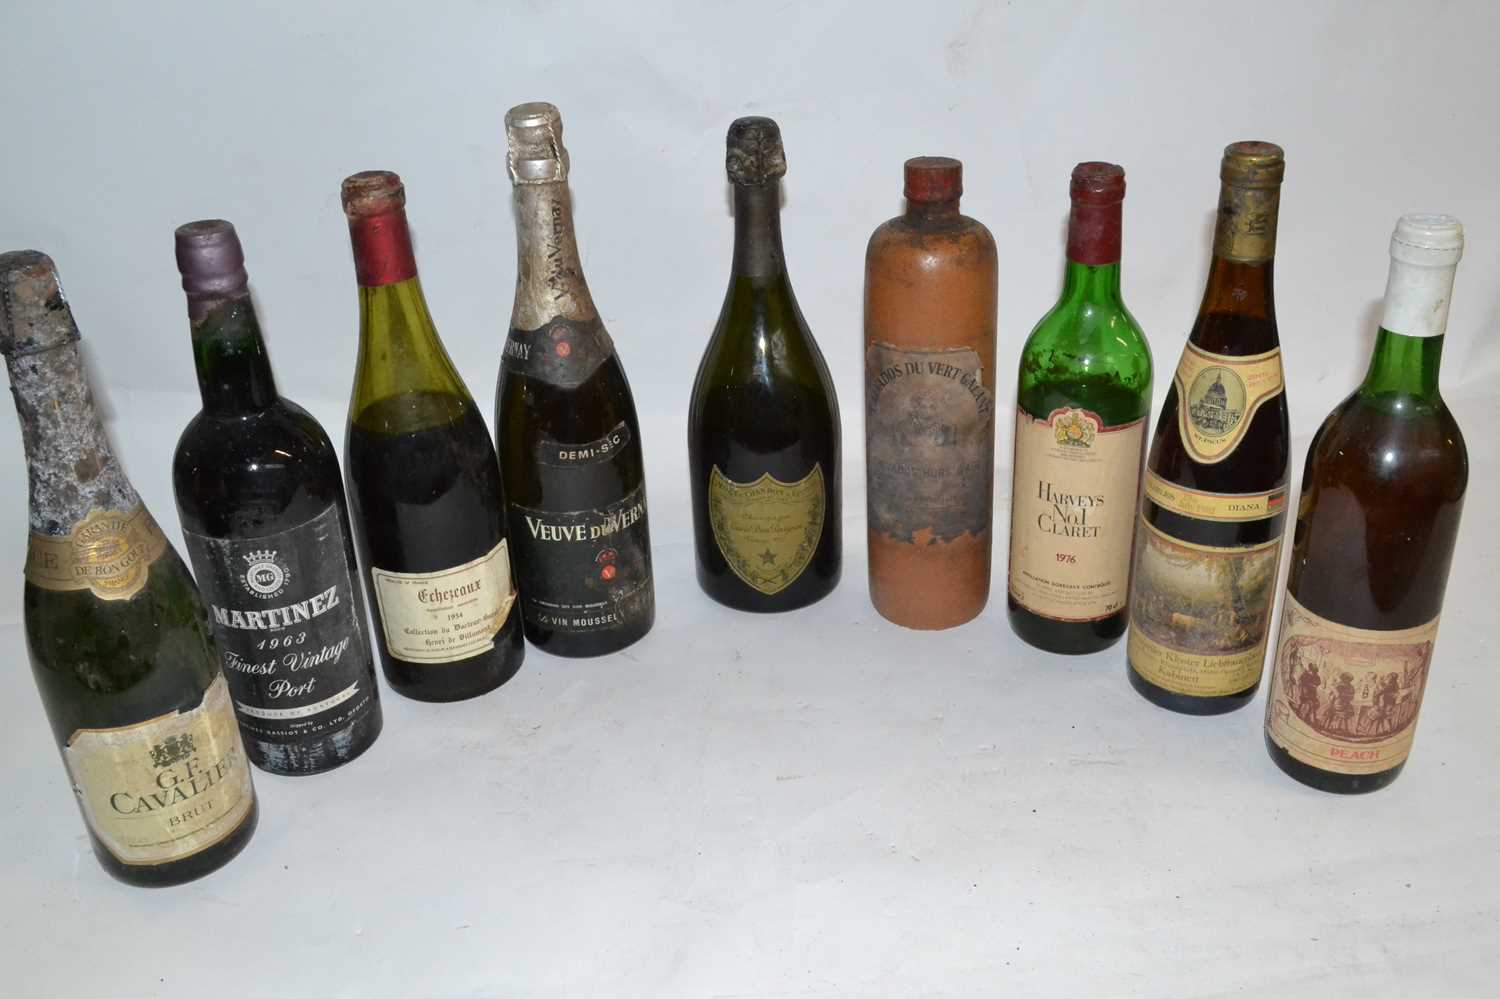 1970 Dom Perignon Champagne, 1963 Martinez Vintage Port, 1980 Steinweiler, Peach Wine, 1934